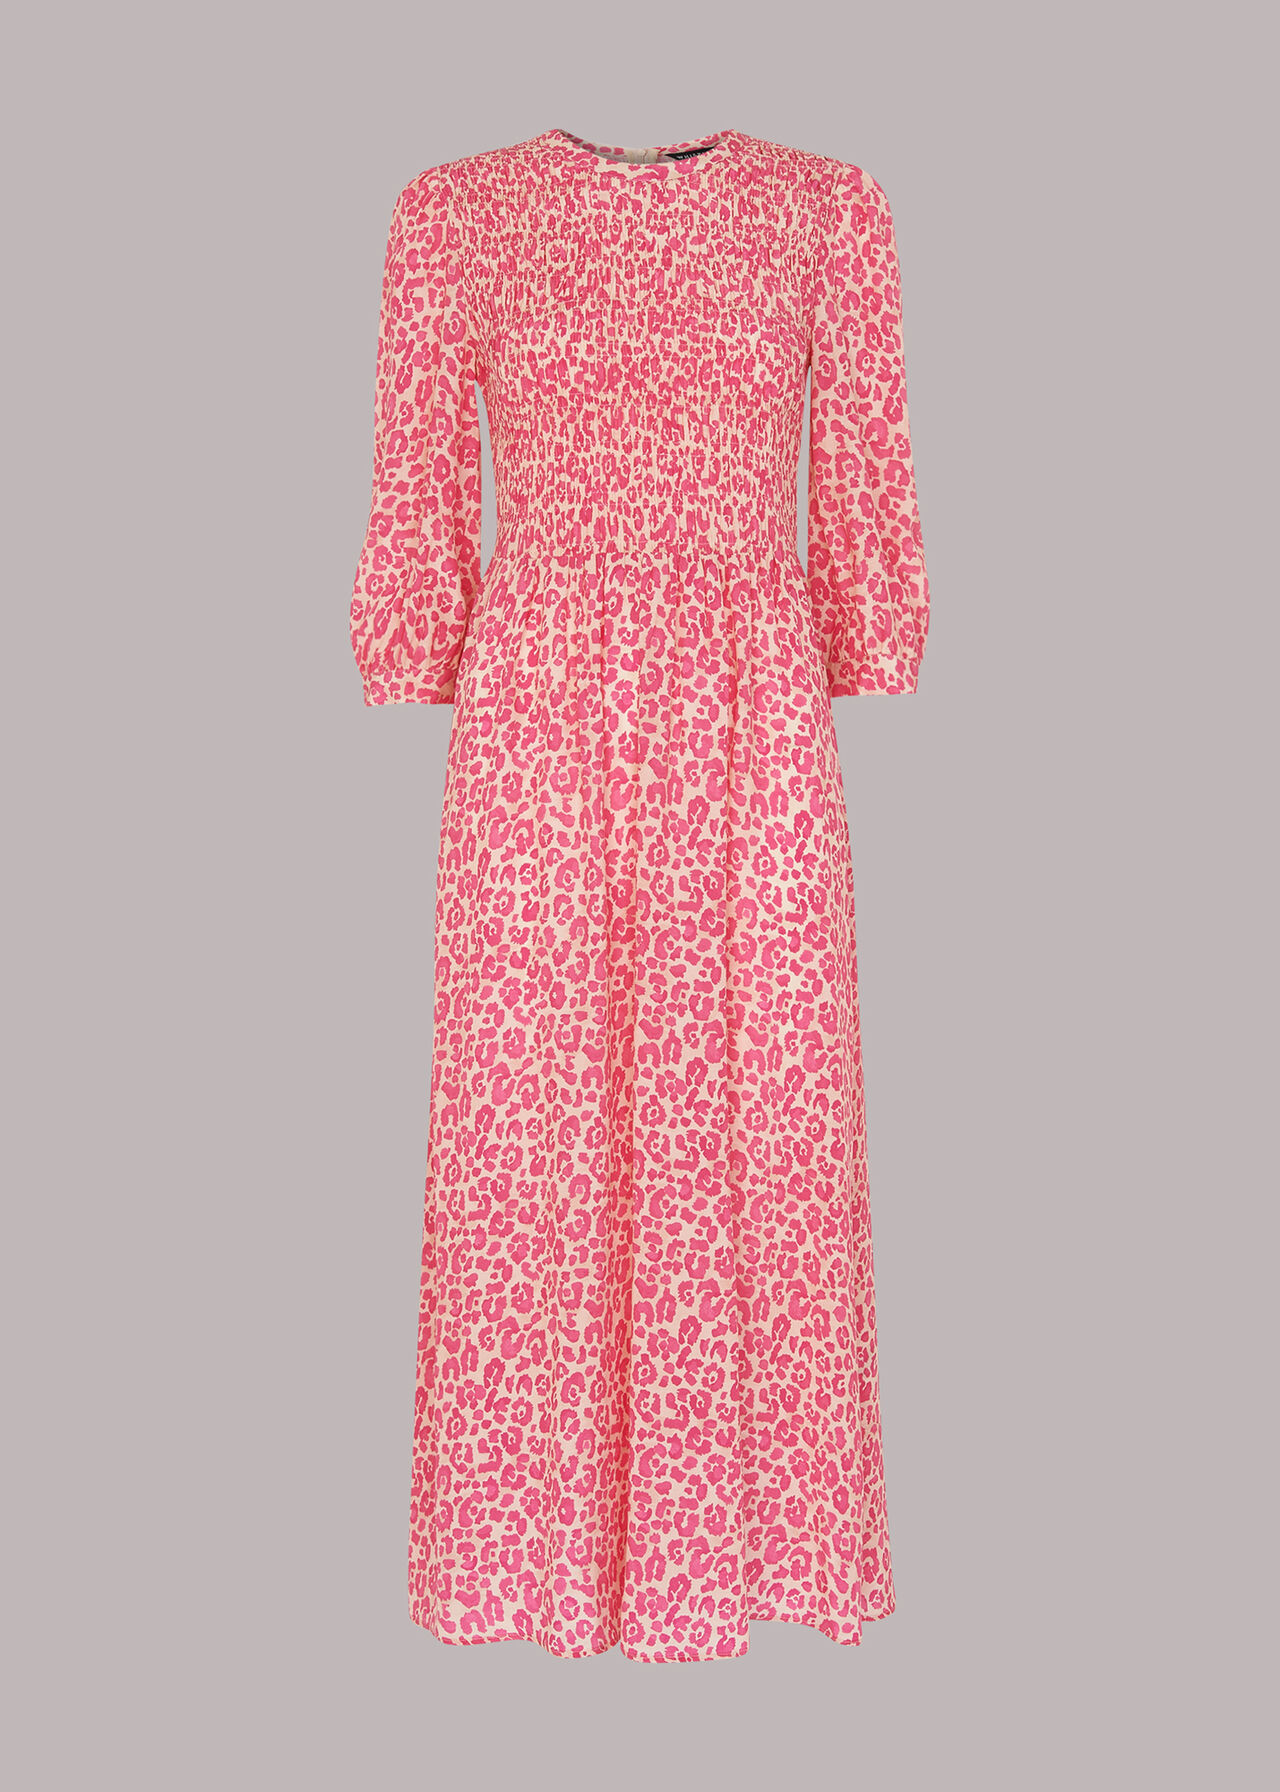 Pink/Multi Cheetah Print Shirred Dress | WHISTLES